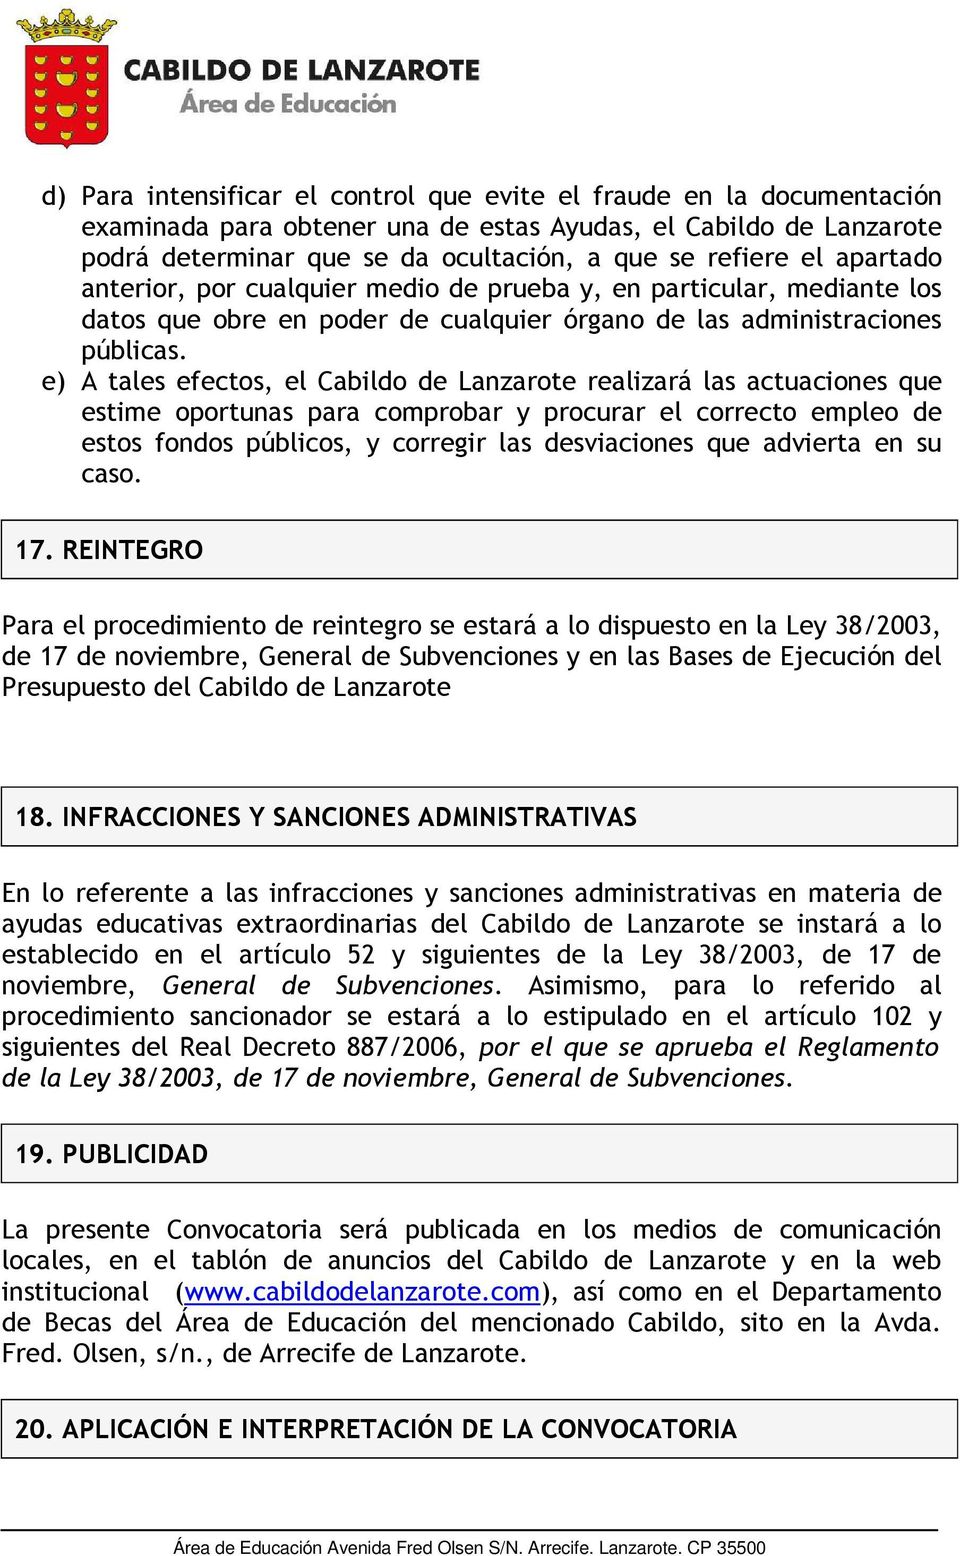 e) A tales efectos, el Cabildo de Lanzarote realizará las actuaciones que estime oportunas para comprobar y procurar el correcto empleo de estos fondos públicos, y corregir las desviaciones que